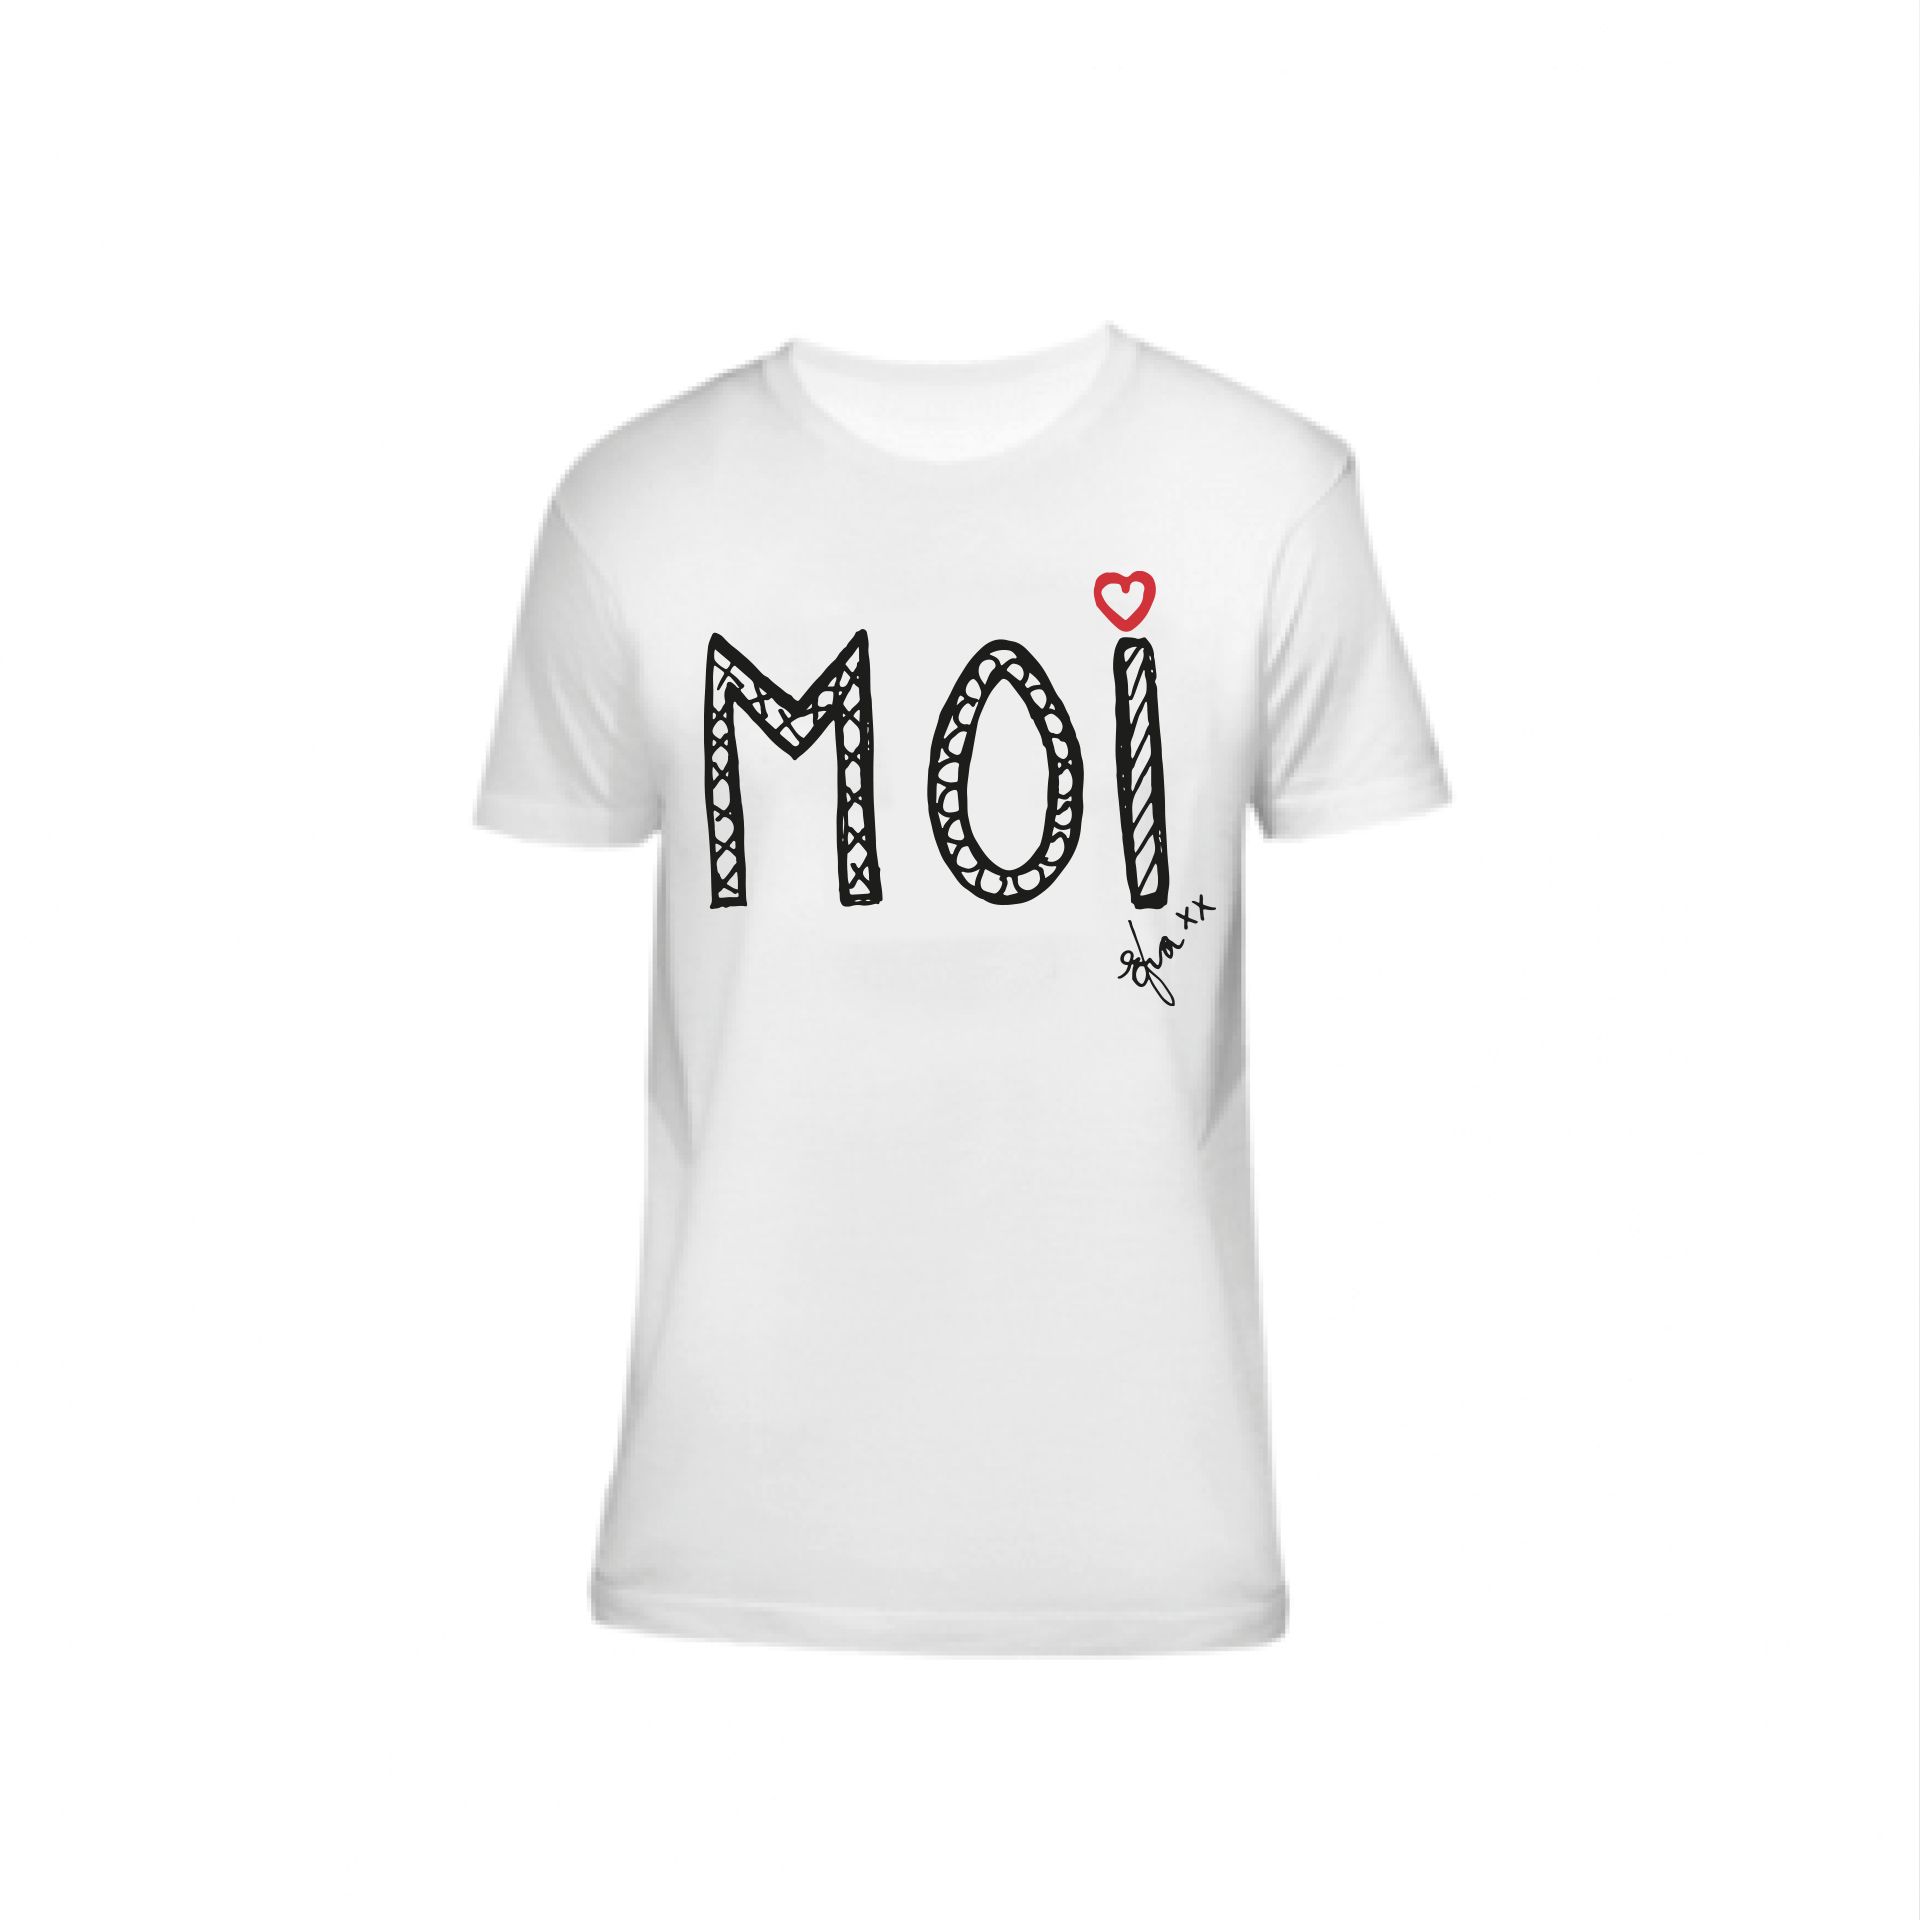 Efva Attling MOI T-shirt XS - NATURMATERIAL